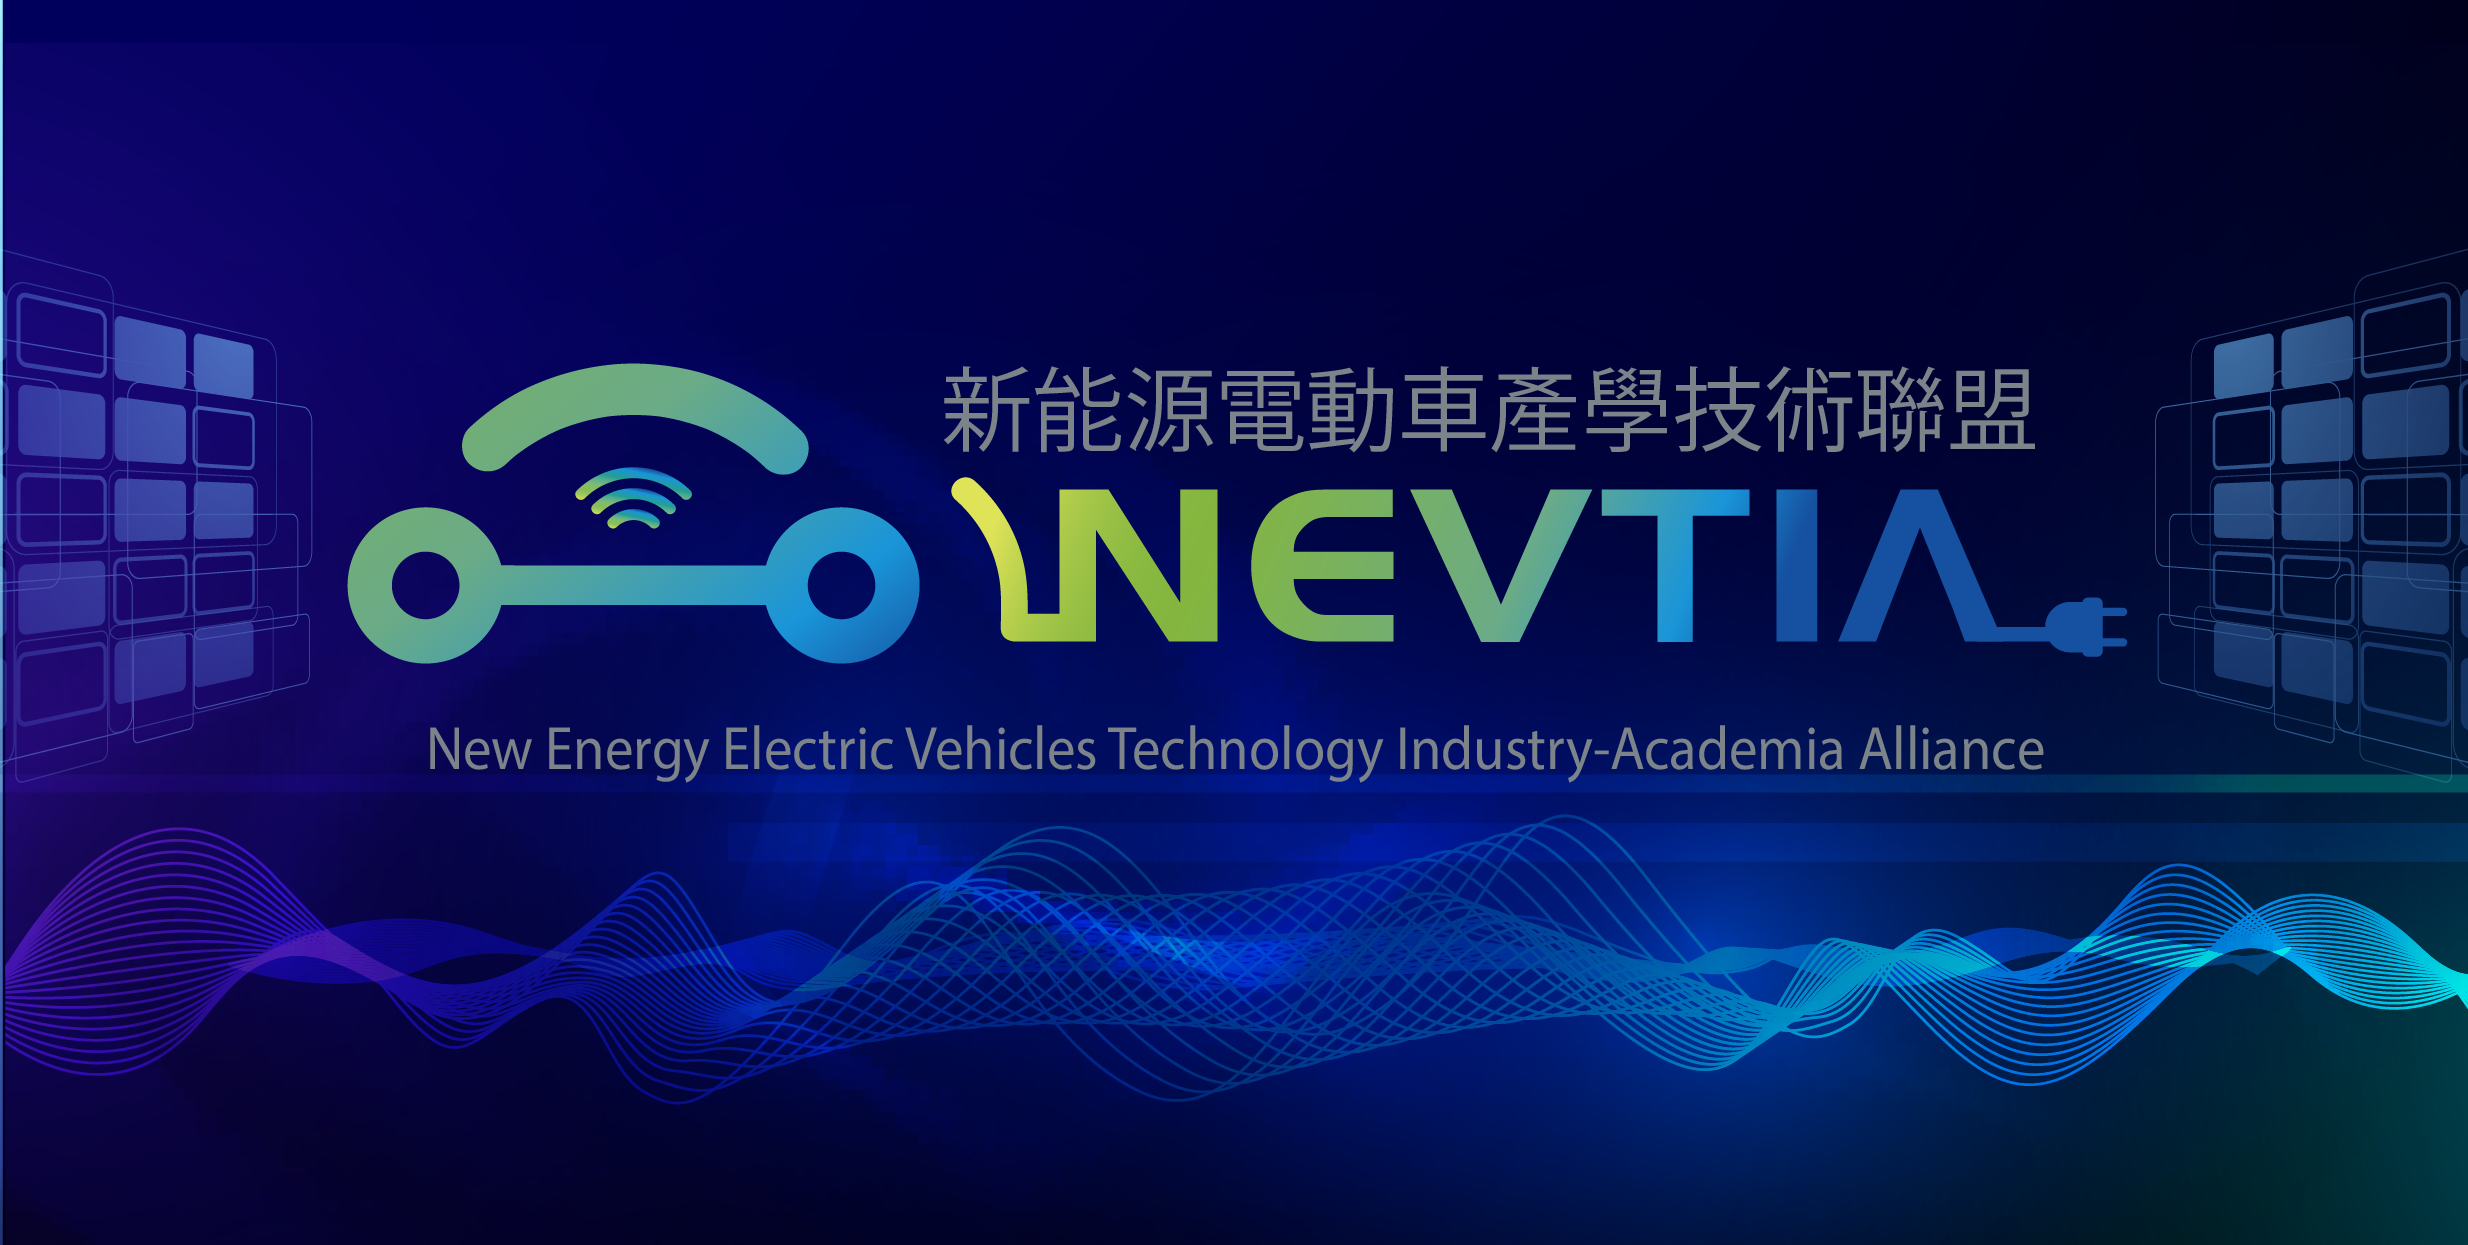 工程-光電資通訊_新能源電動車產學技術聯盟